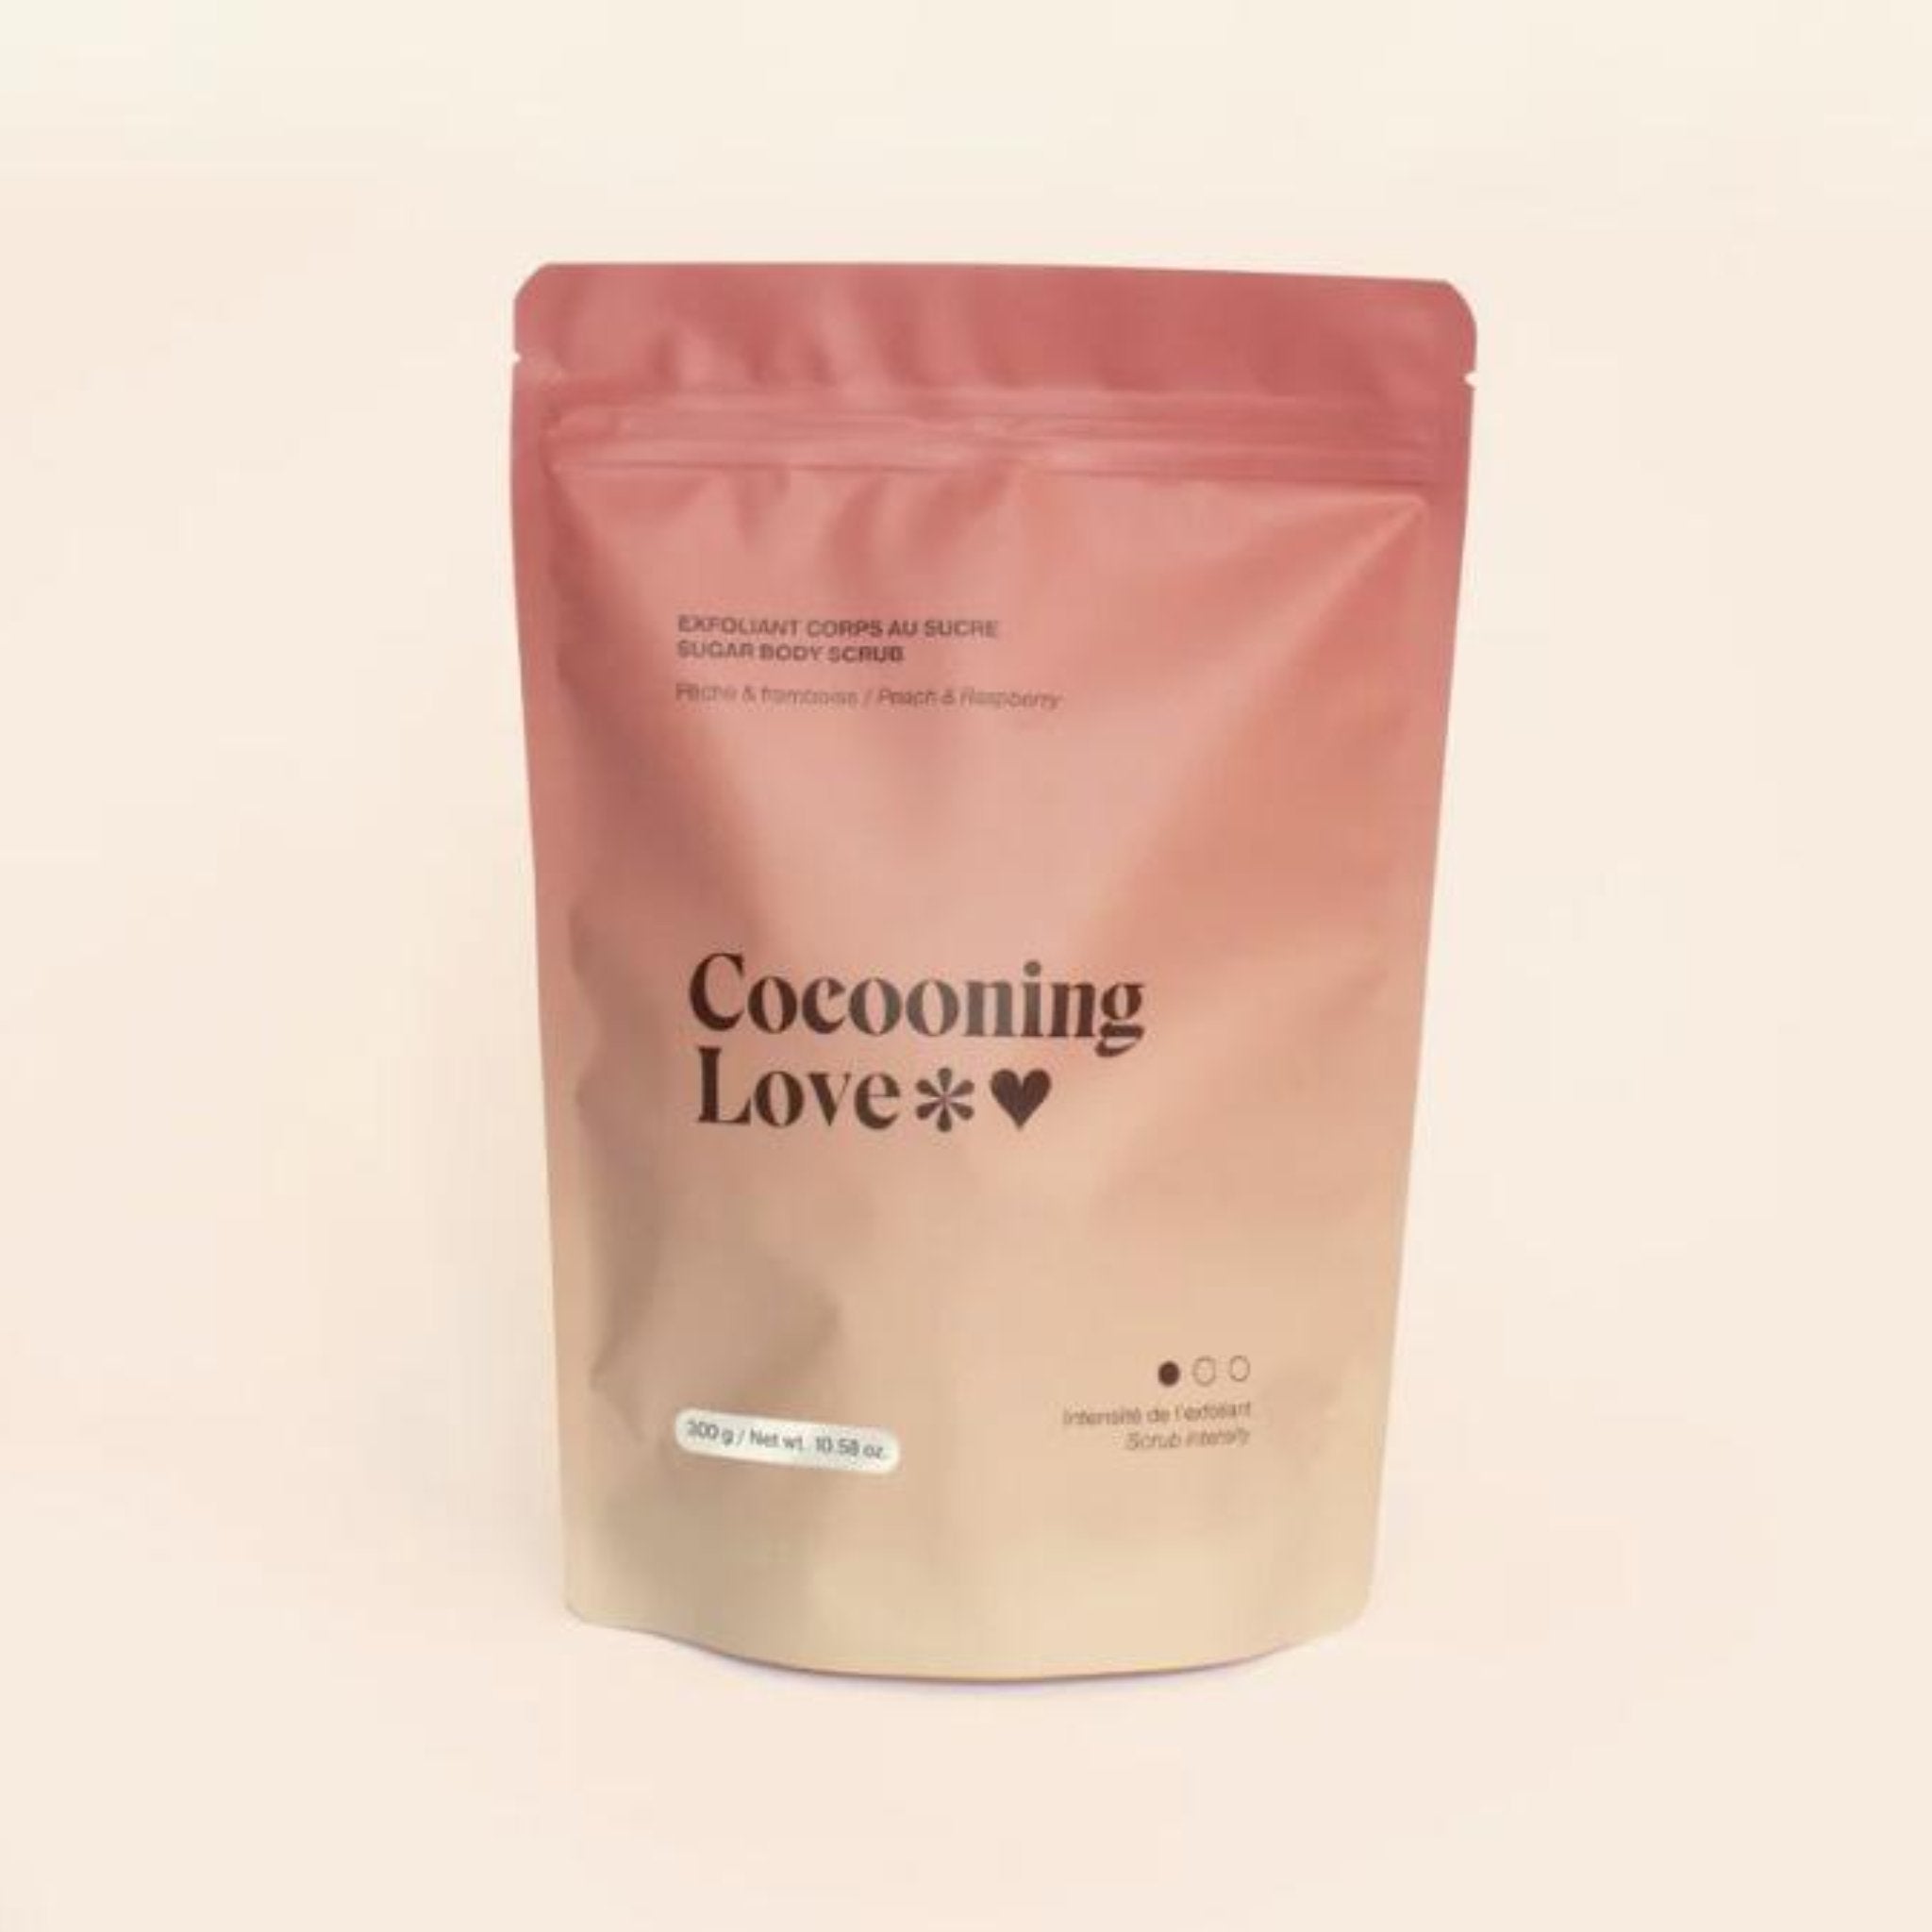 Cocooning Love. Exfoliant Corps au Sucre Pêche & Framboise - 300 gr - Concept C. Shop